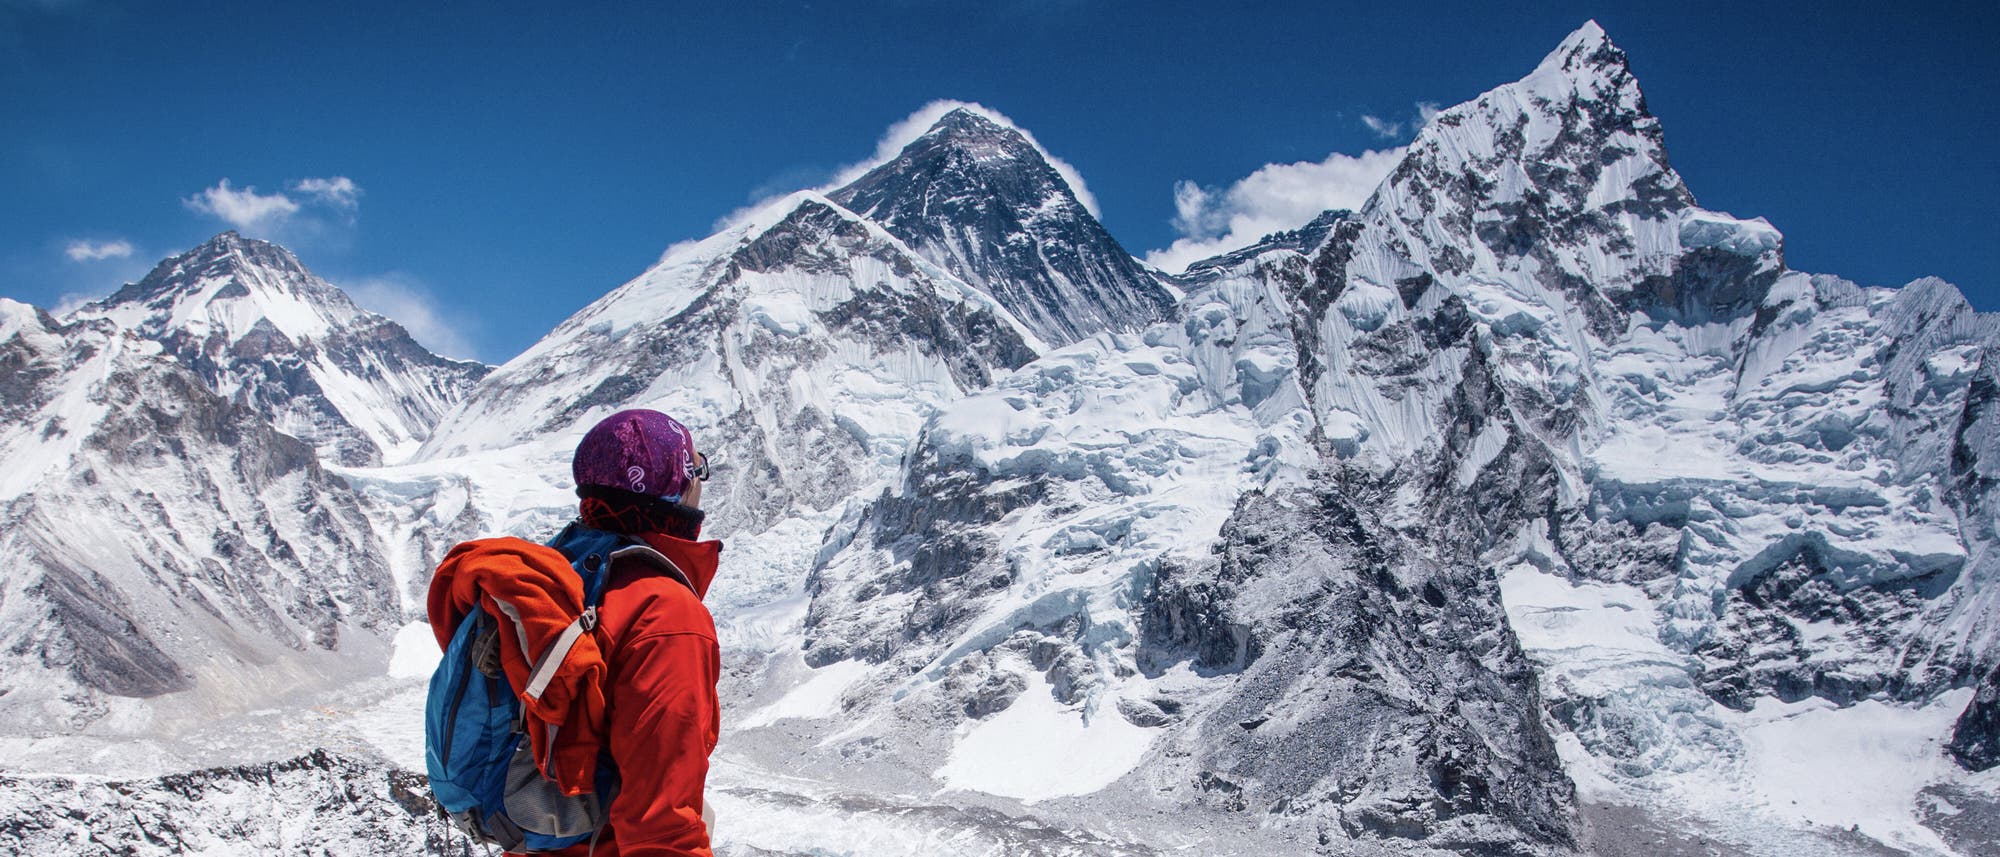 Eine Bergsteigerin blickt auf den Mount Everest im Himalaya.